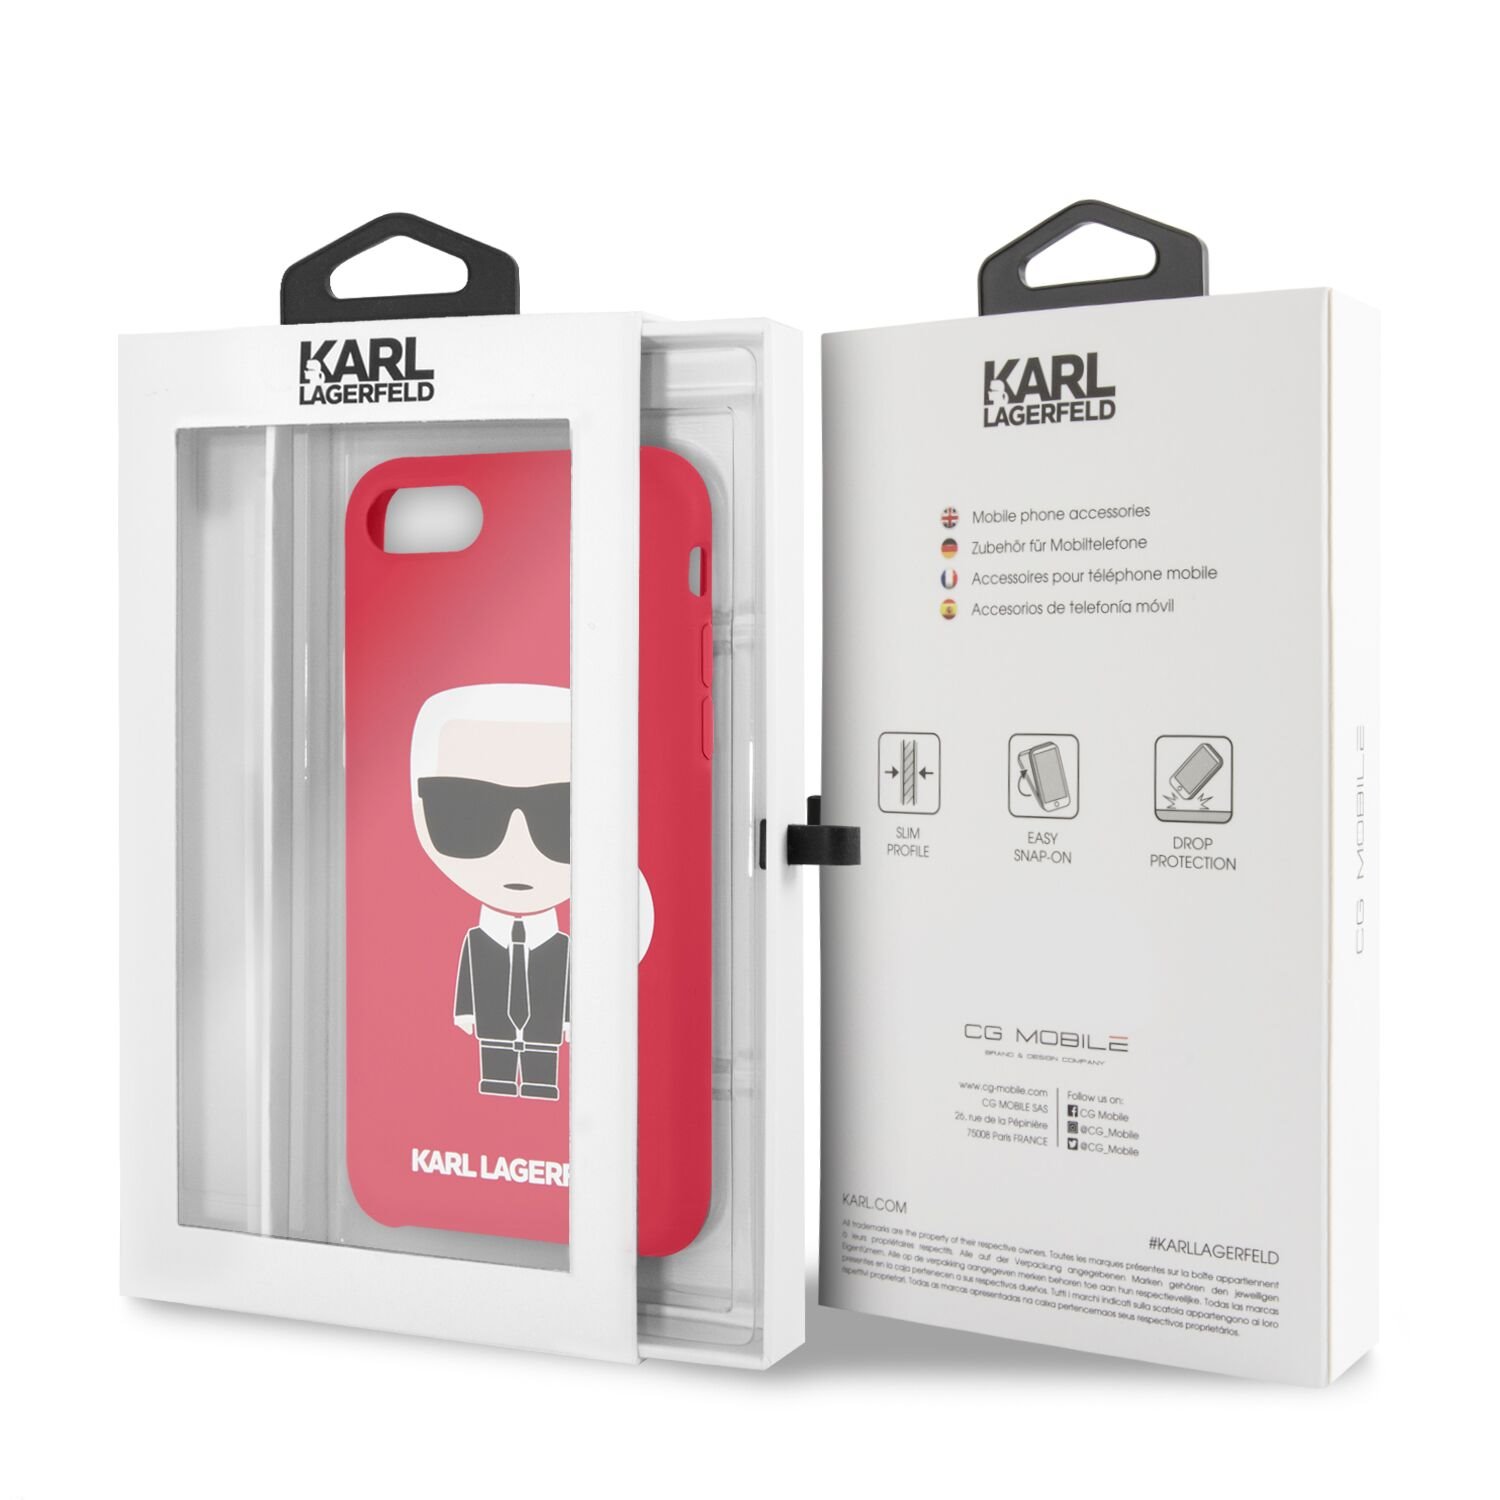 Silikonové pouzdro Karl Lagerfeld Full Body pro Apple iPhone 7/8/SE2020/SE2022, červená